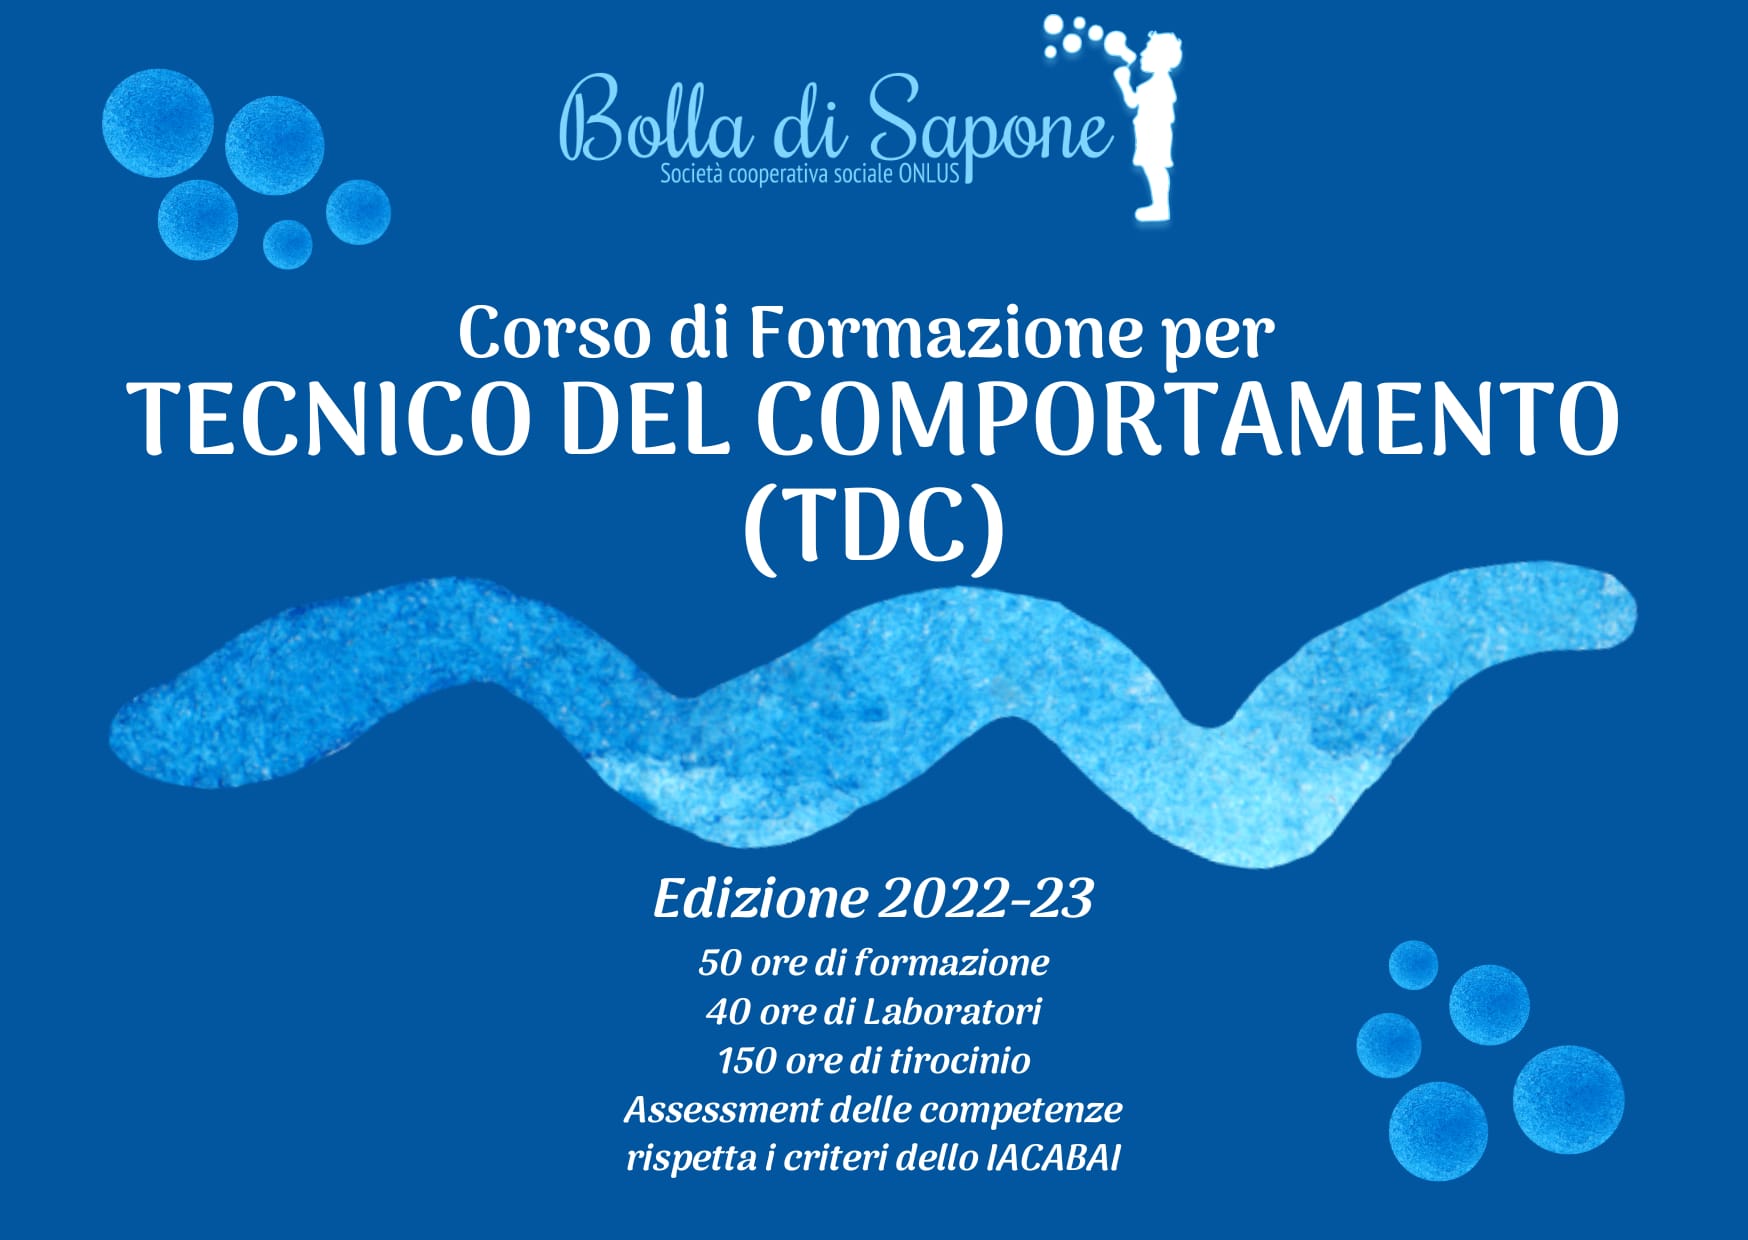 CORSO DI FORMAZIONE PER "TECNICO DEL COMPORTAMENTO (TDC)" - edizione 2022